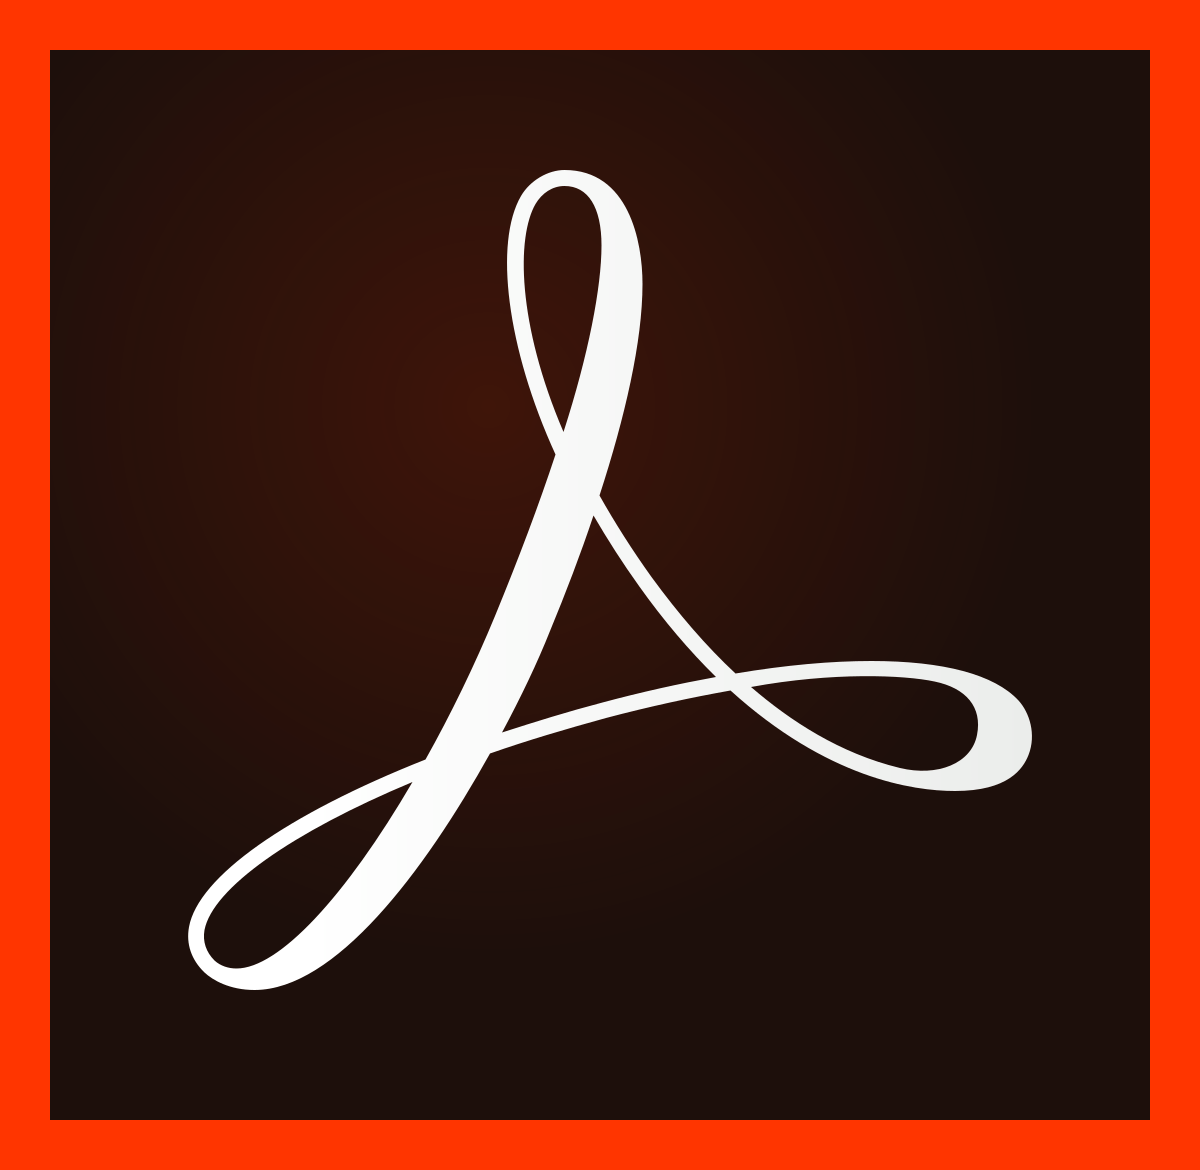 New Adobe Logo - Adobe Acrobat